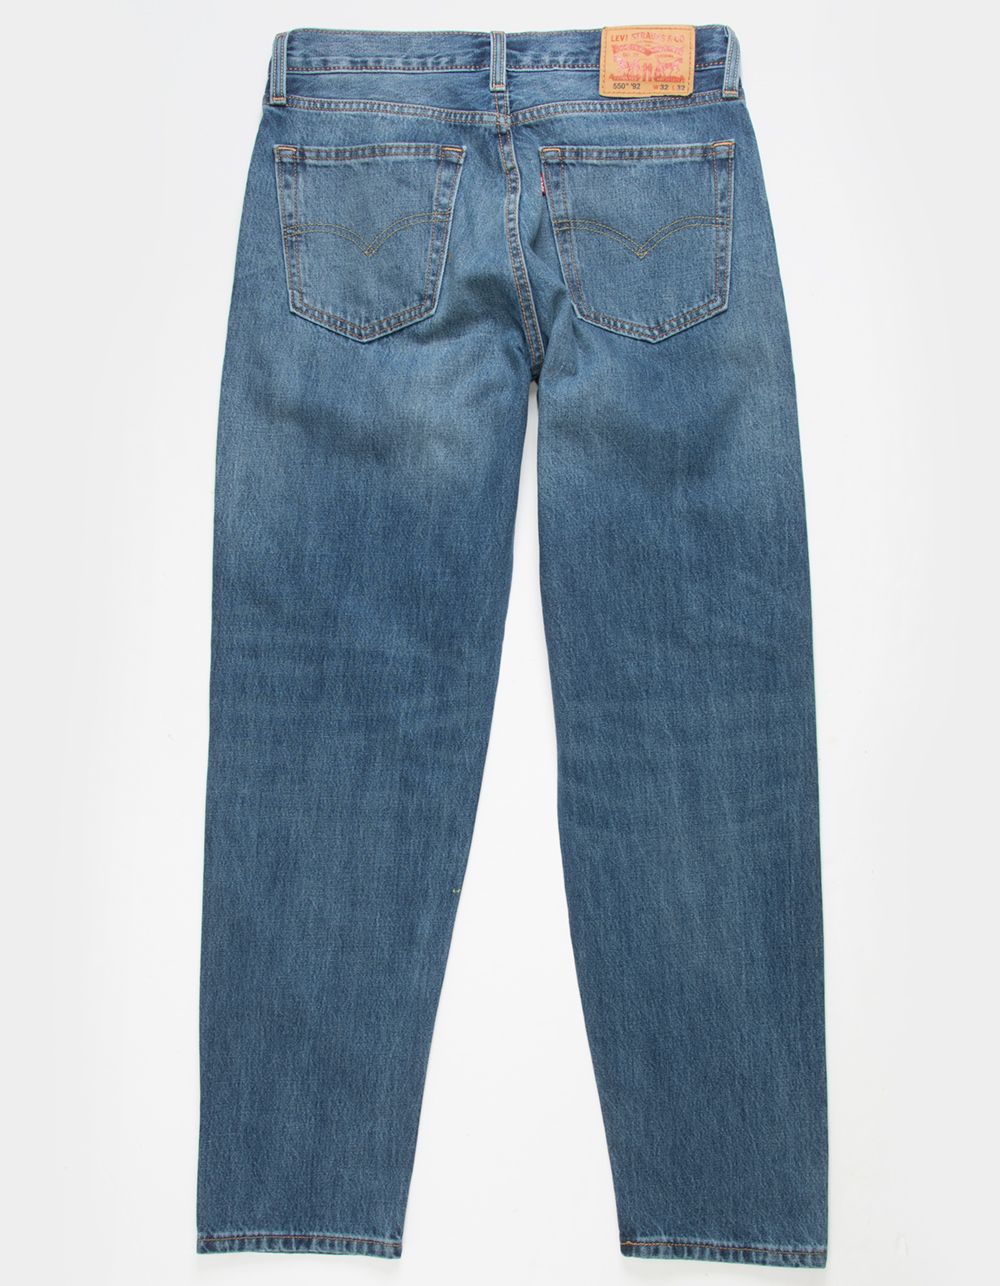 LEVI'S 550 92 Relaxed Taper Mens Jeans - BLUE DENIM | Tillys